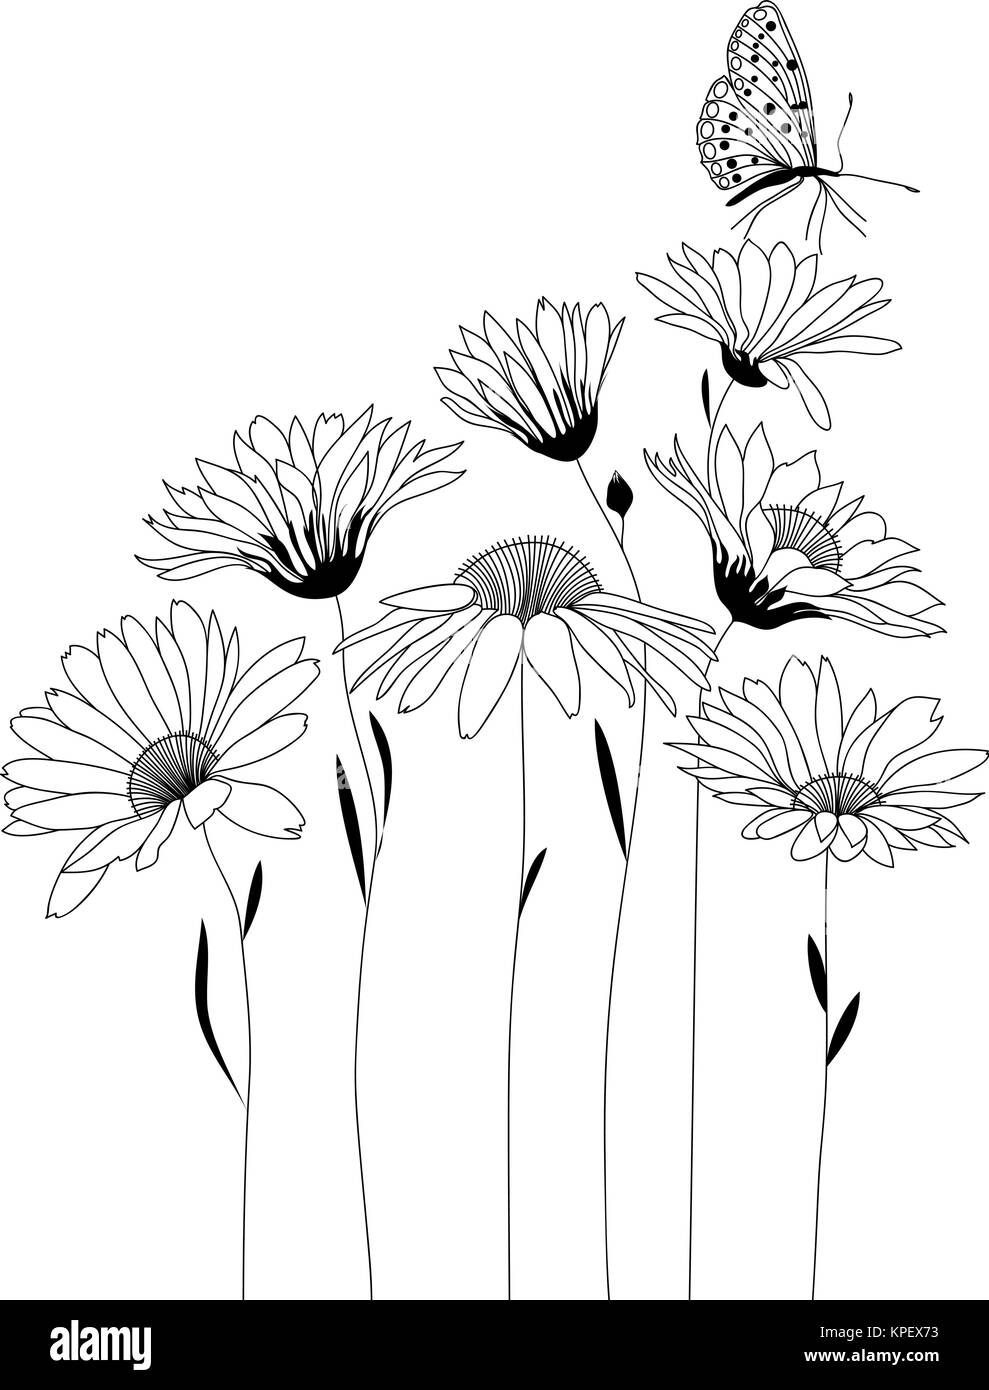 Blumen, Blumenstrauß aus stilisierten Blumen, Vector Illustration Stock Vektor